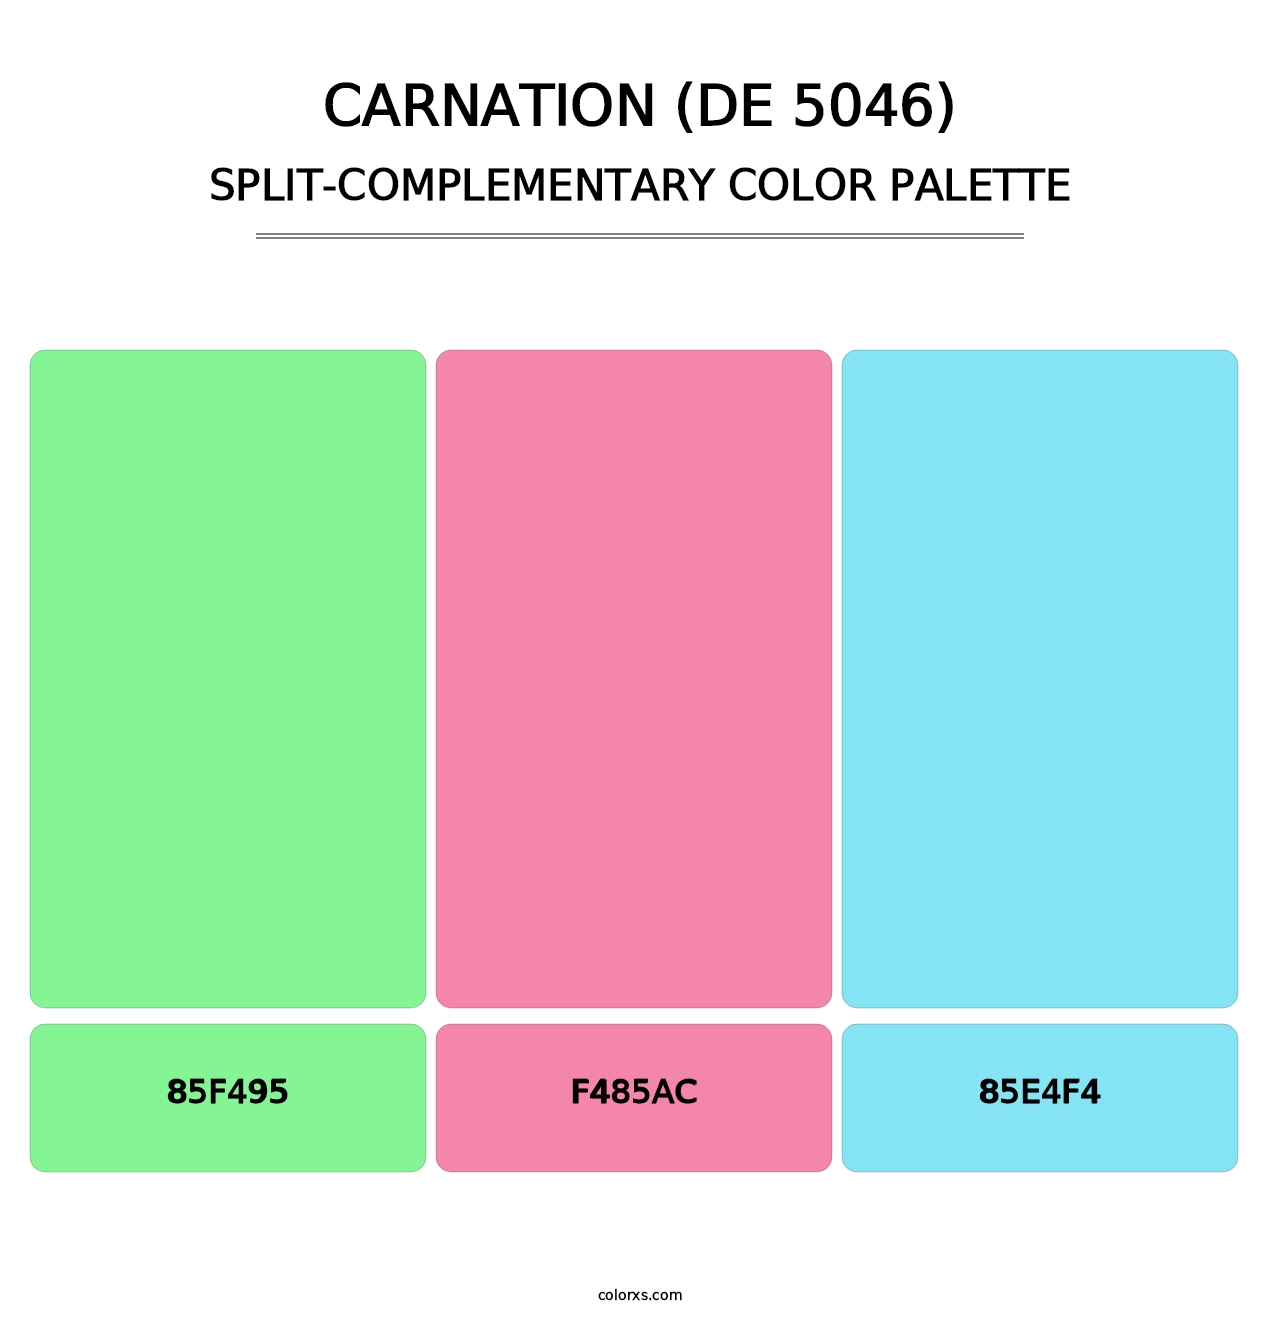 Carnation (DE 5046) - Split-Complementary Color Palette